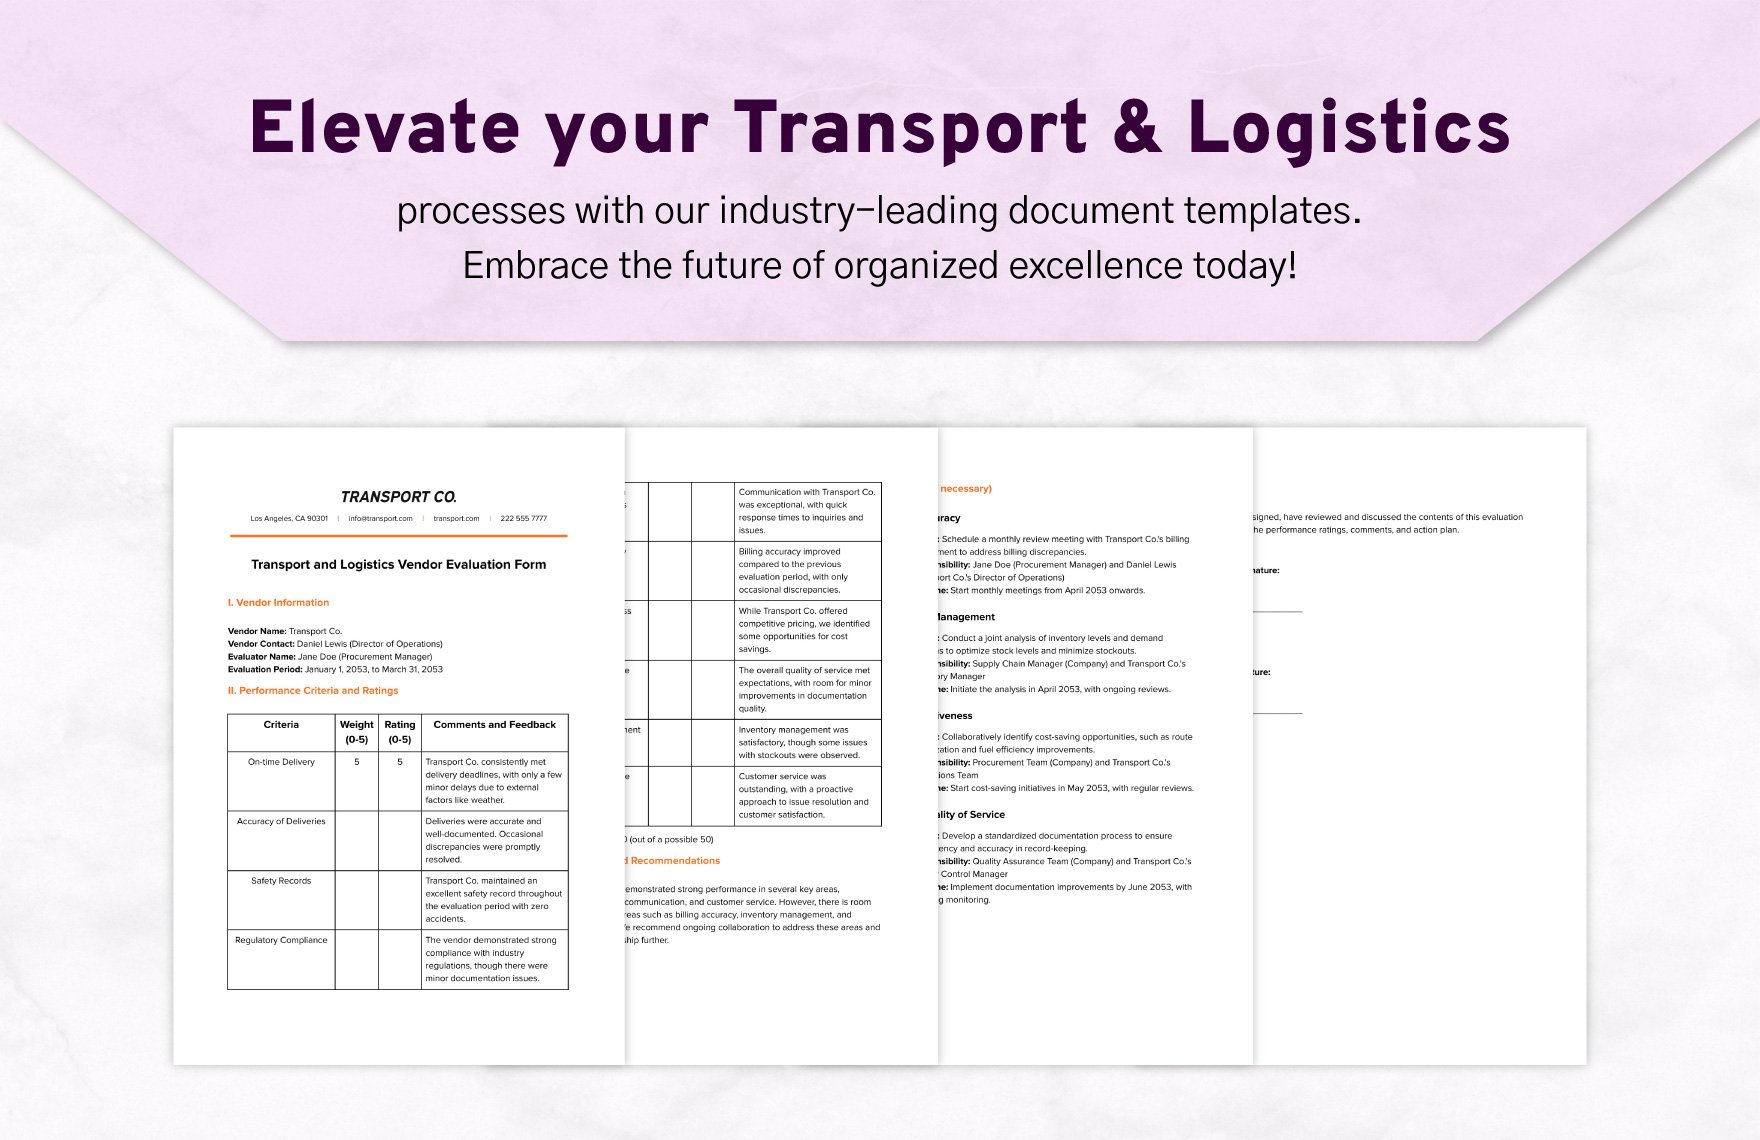 Transport and Logistics Vendor Evaluation Form Template